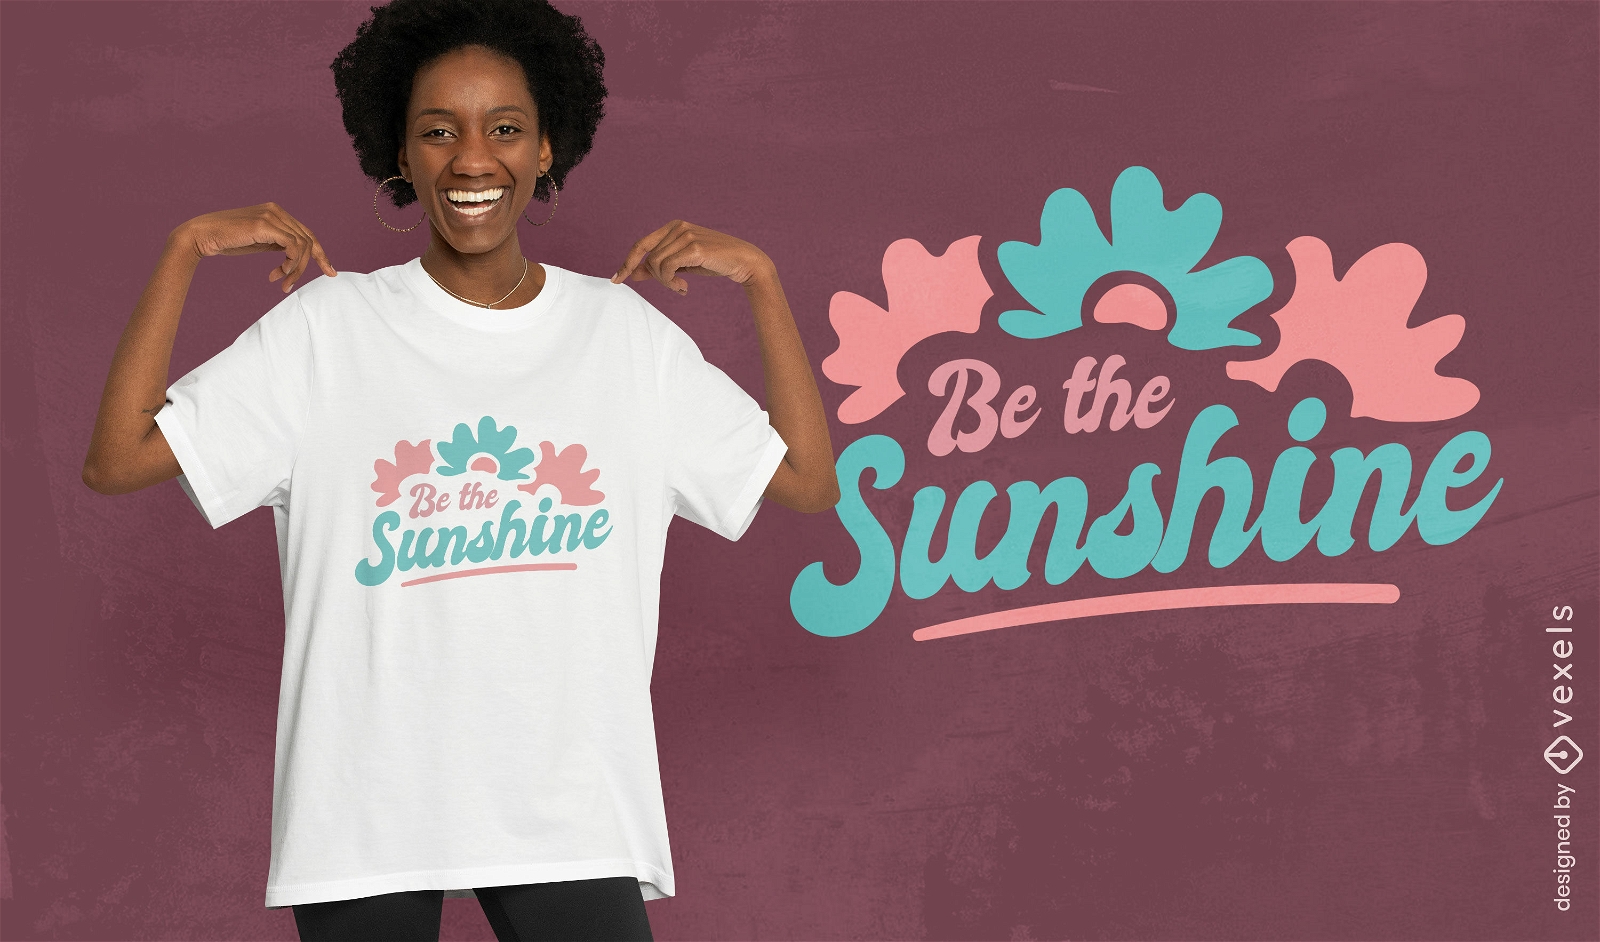 Sonnenschein-Positivitäts-T-Shirt-Design